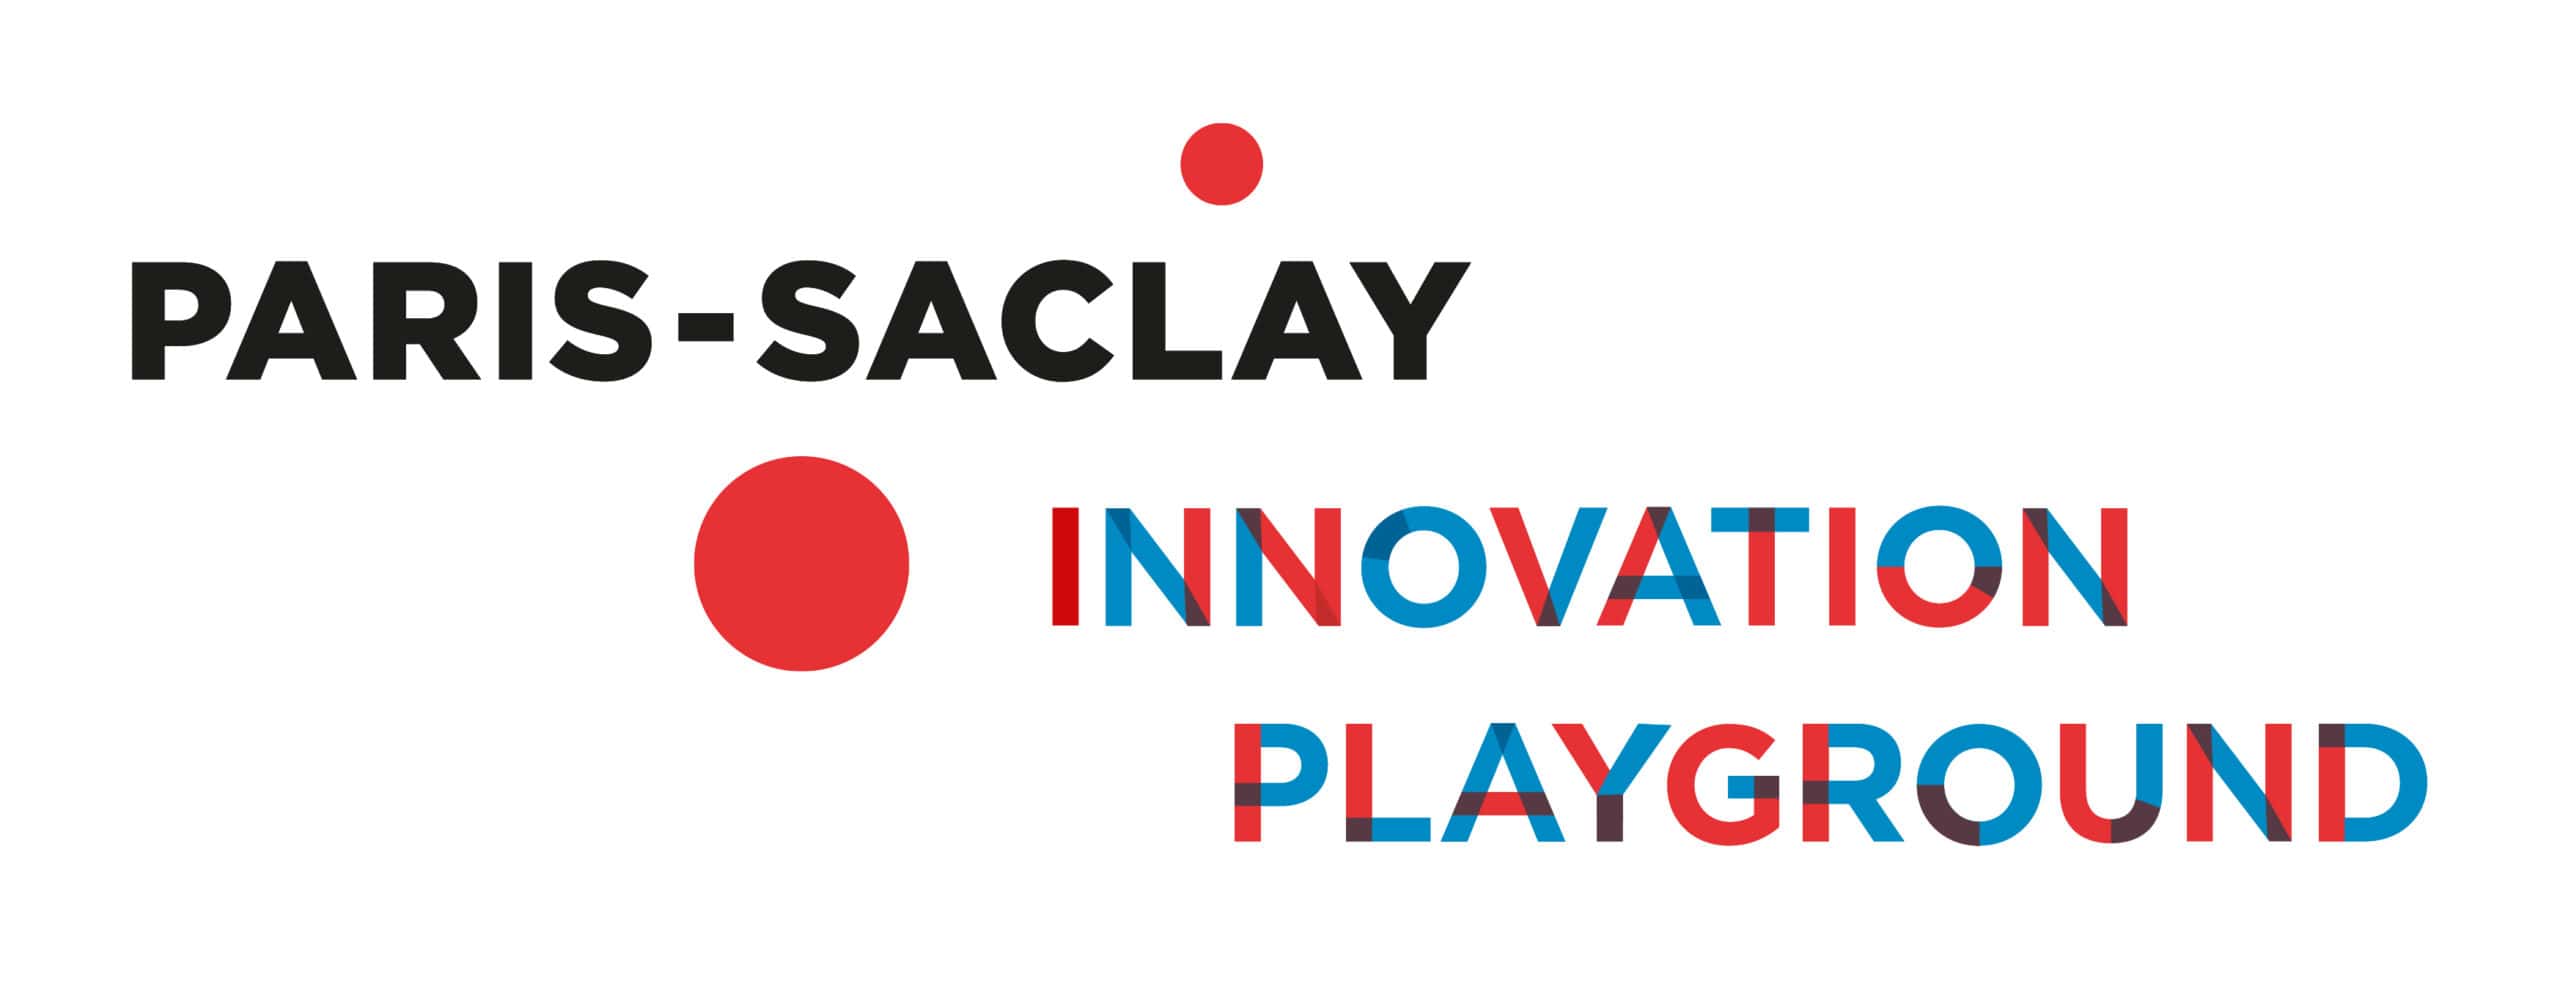 Paris Saclay Innovation Playground